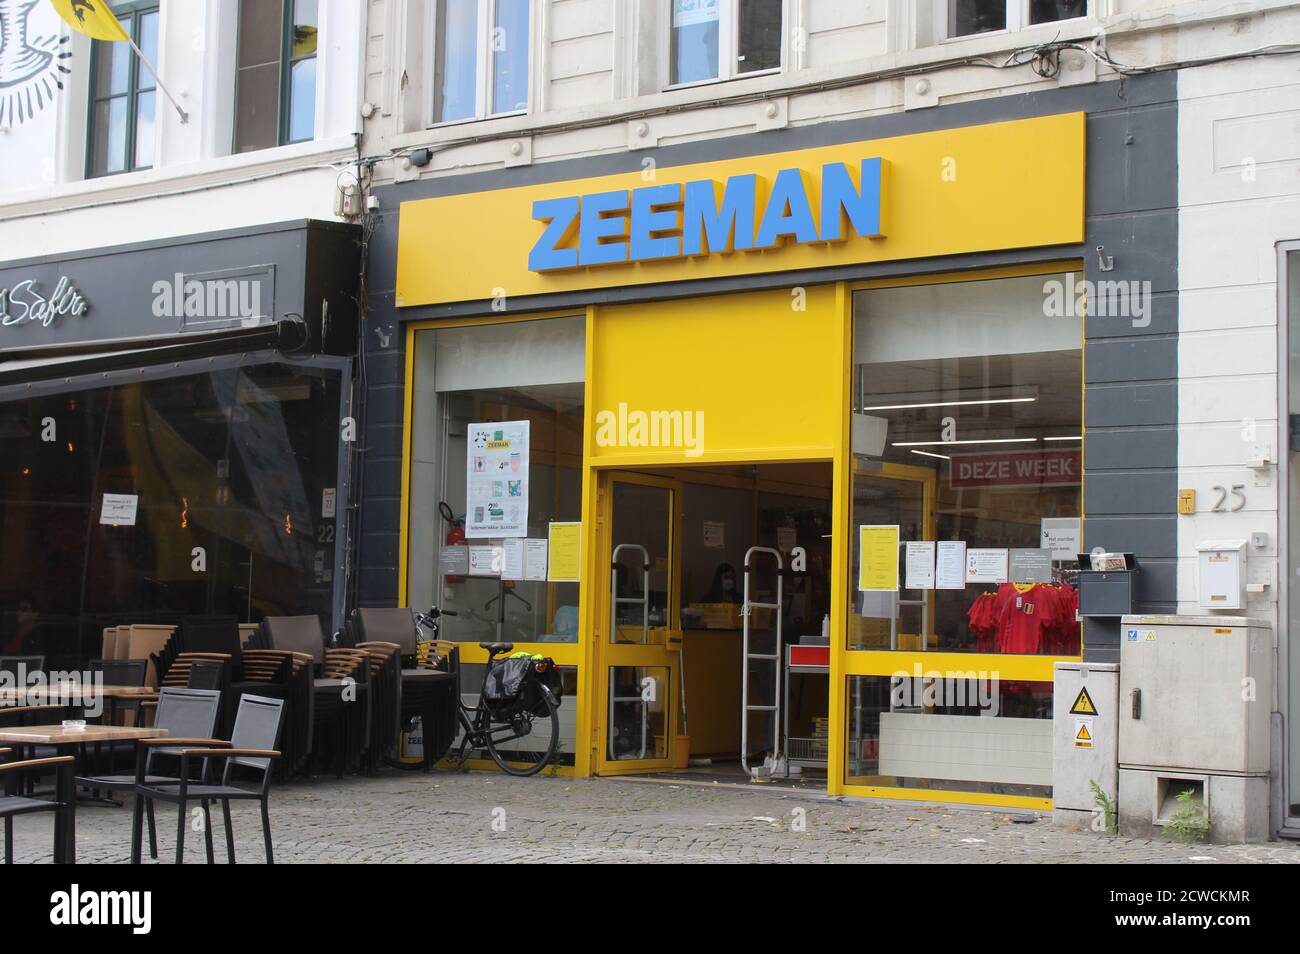 AALST, BELGIEN, 6. JULI 2020: Außenansicht eines Zeeman-Ladens in Flandern. Zeeman ist eine niederländische Textilkette mit über 1,300 Verkaufsstellen in seve Stockfoto